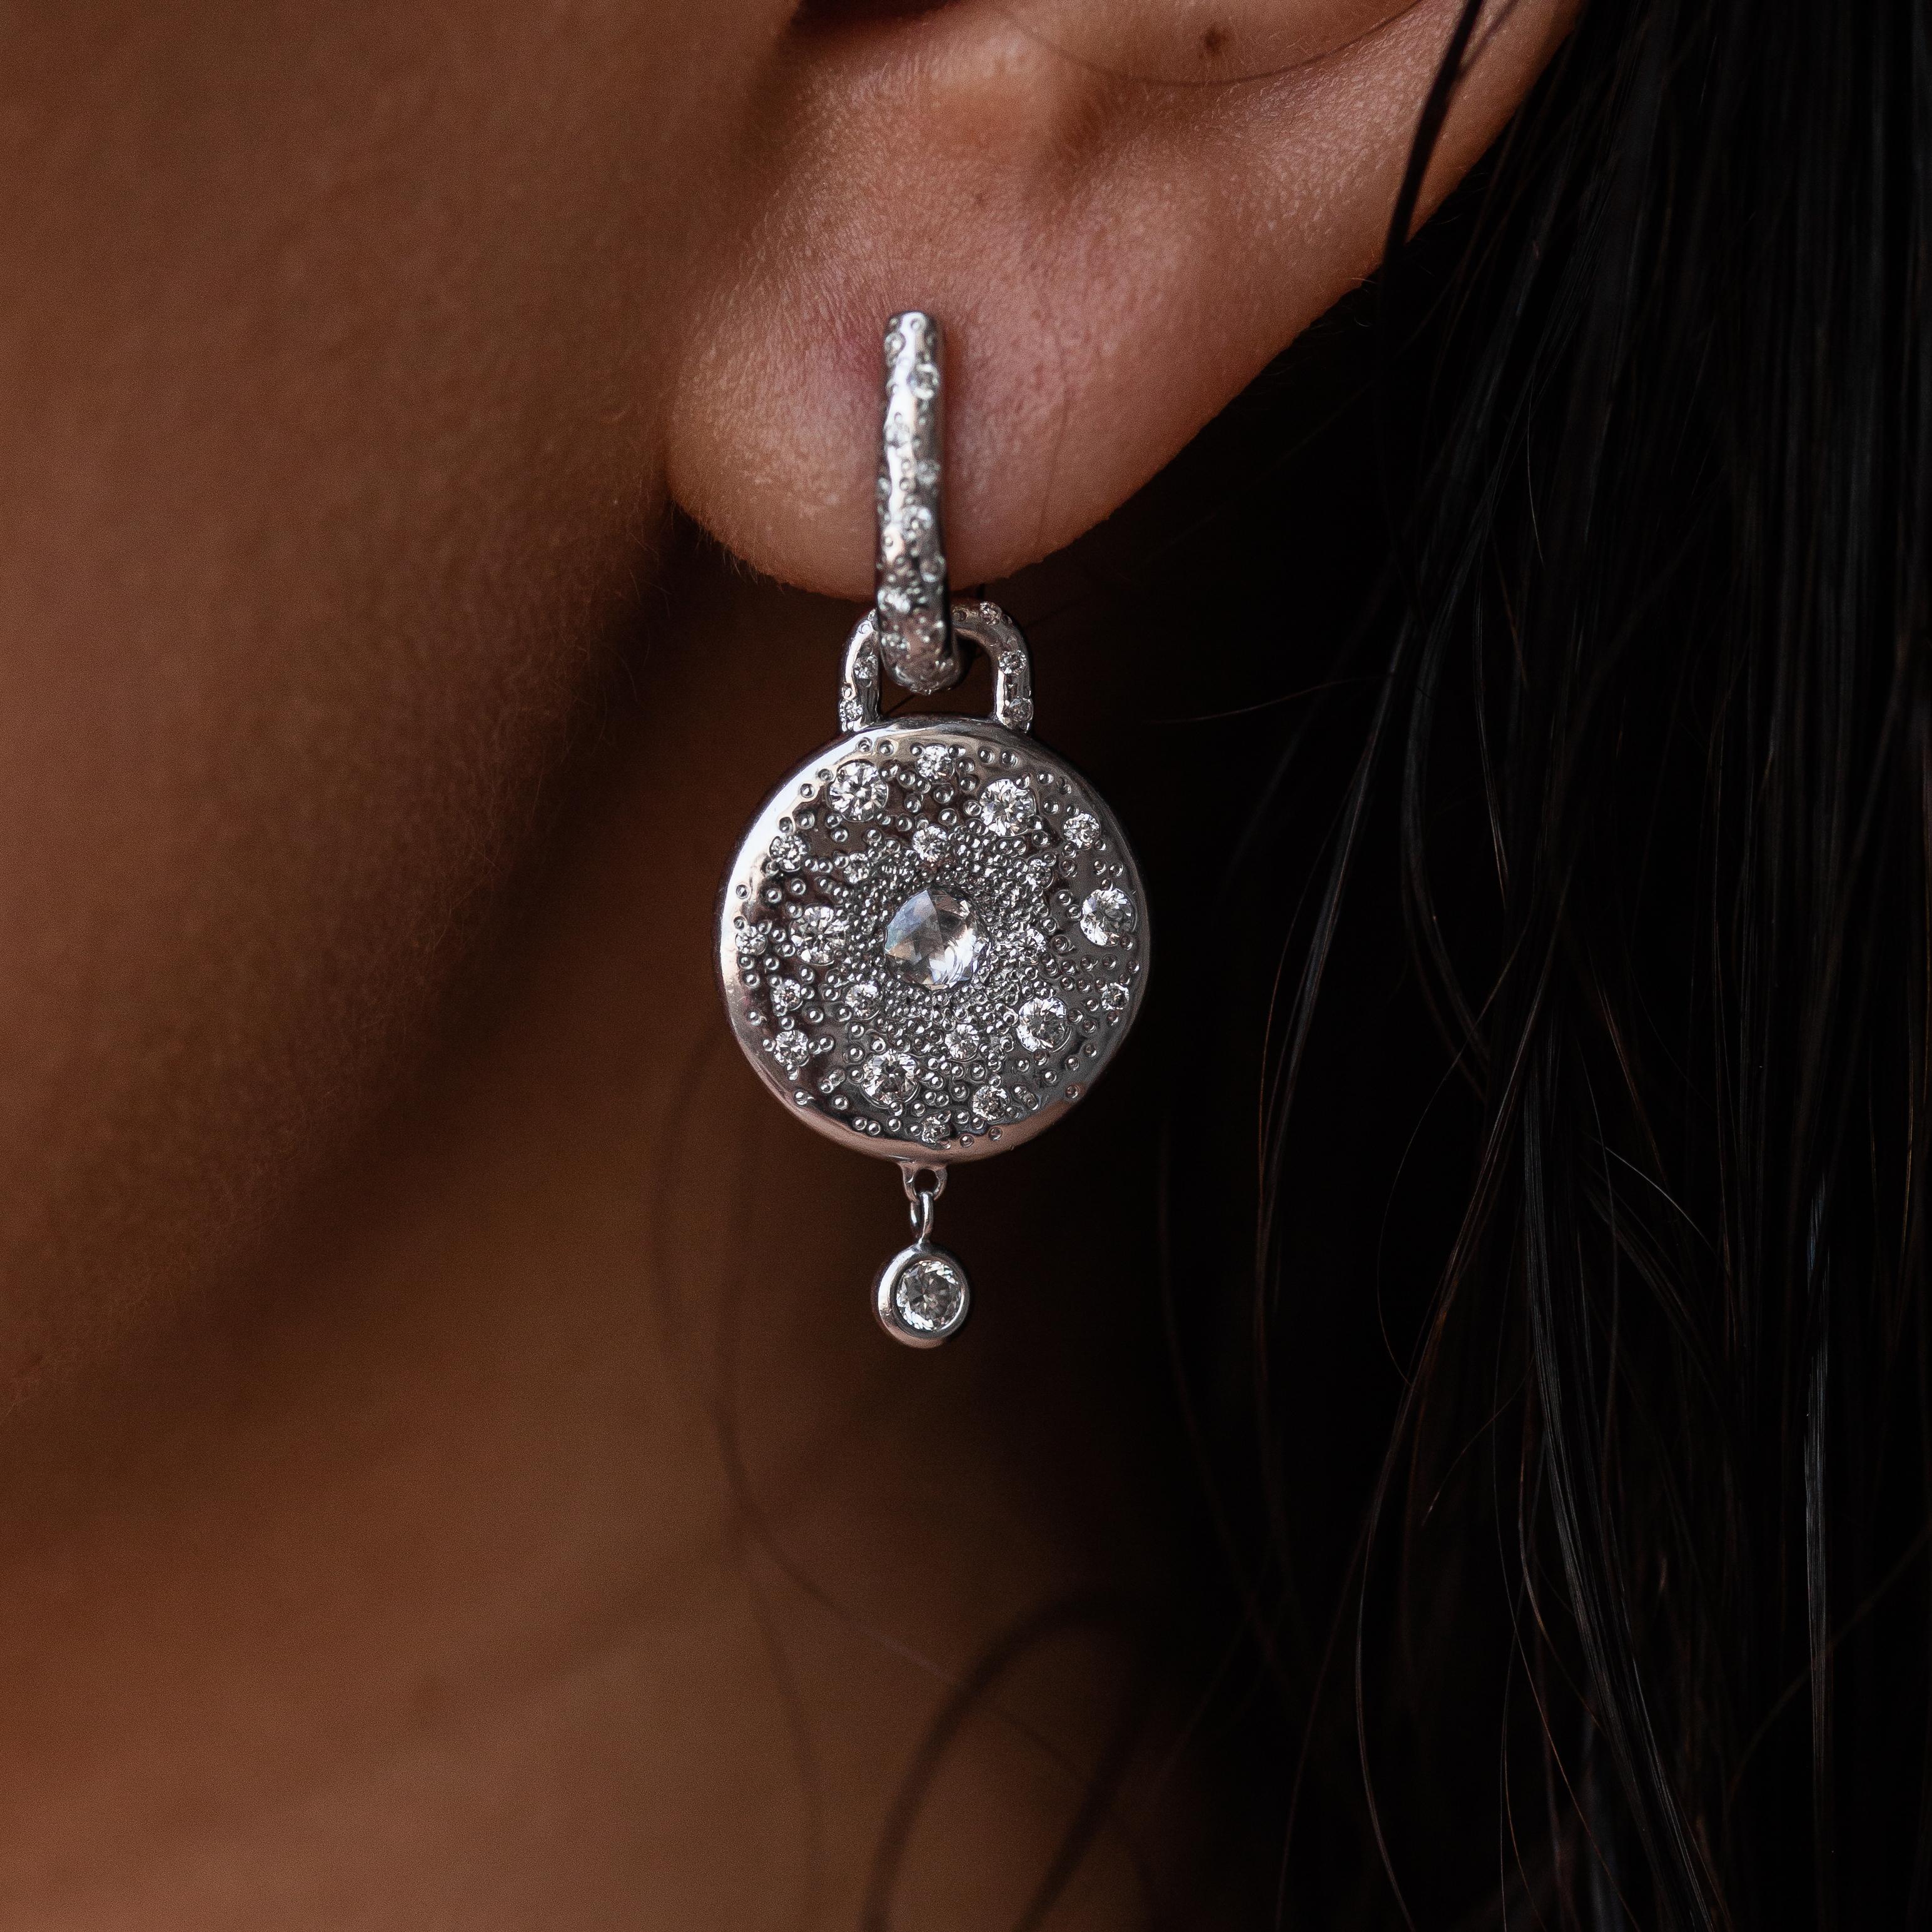 Ces élégantes boucles d'oreilles en or blanc 18 carats sont issues de notre collection Sirène. Ces boucles d'oreilles pendantes sont ornées de diamants incolores pour un total de 1,21 carat. Le poids total du métal est de 11,30 gr. Ils mesurent 3 cm